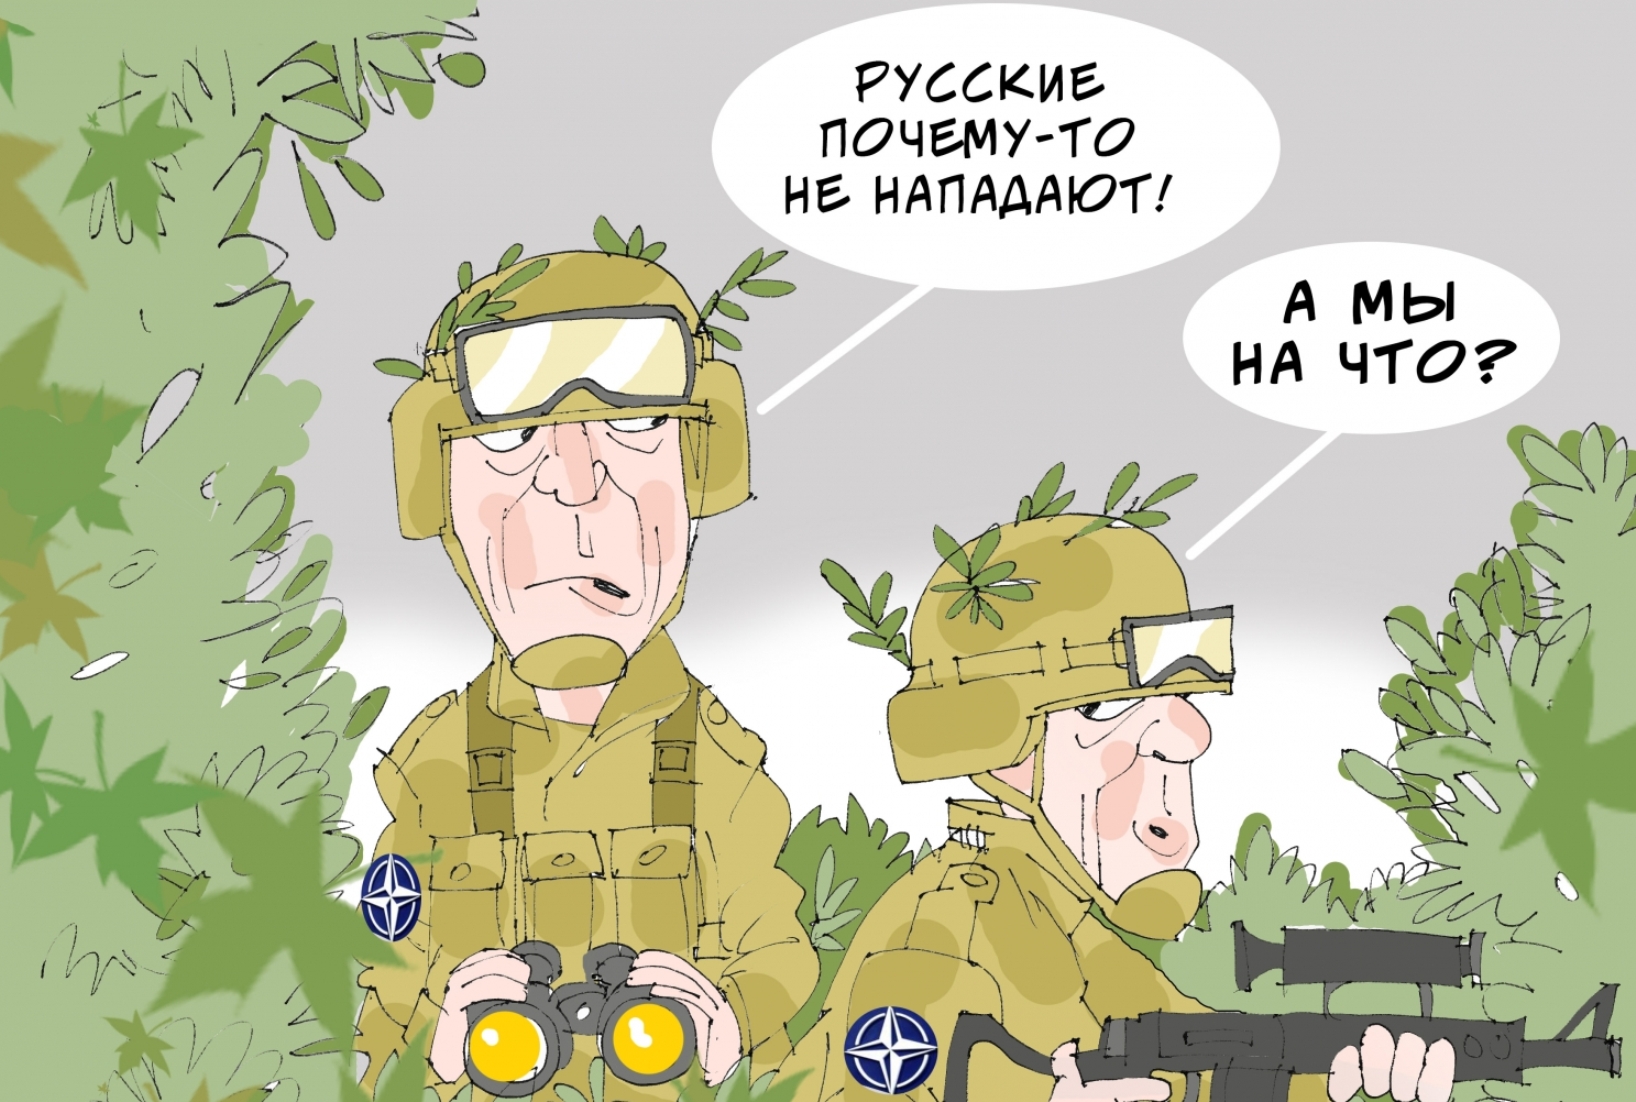 Нато нападет на украину. НАТО карикатура. Карикатура Украина и НАТО. Россия НАТО карикатура. Мемы про НАТО.